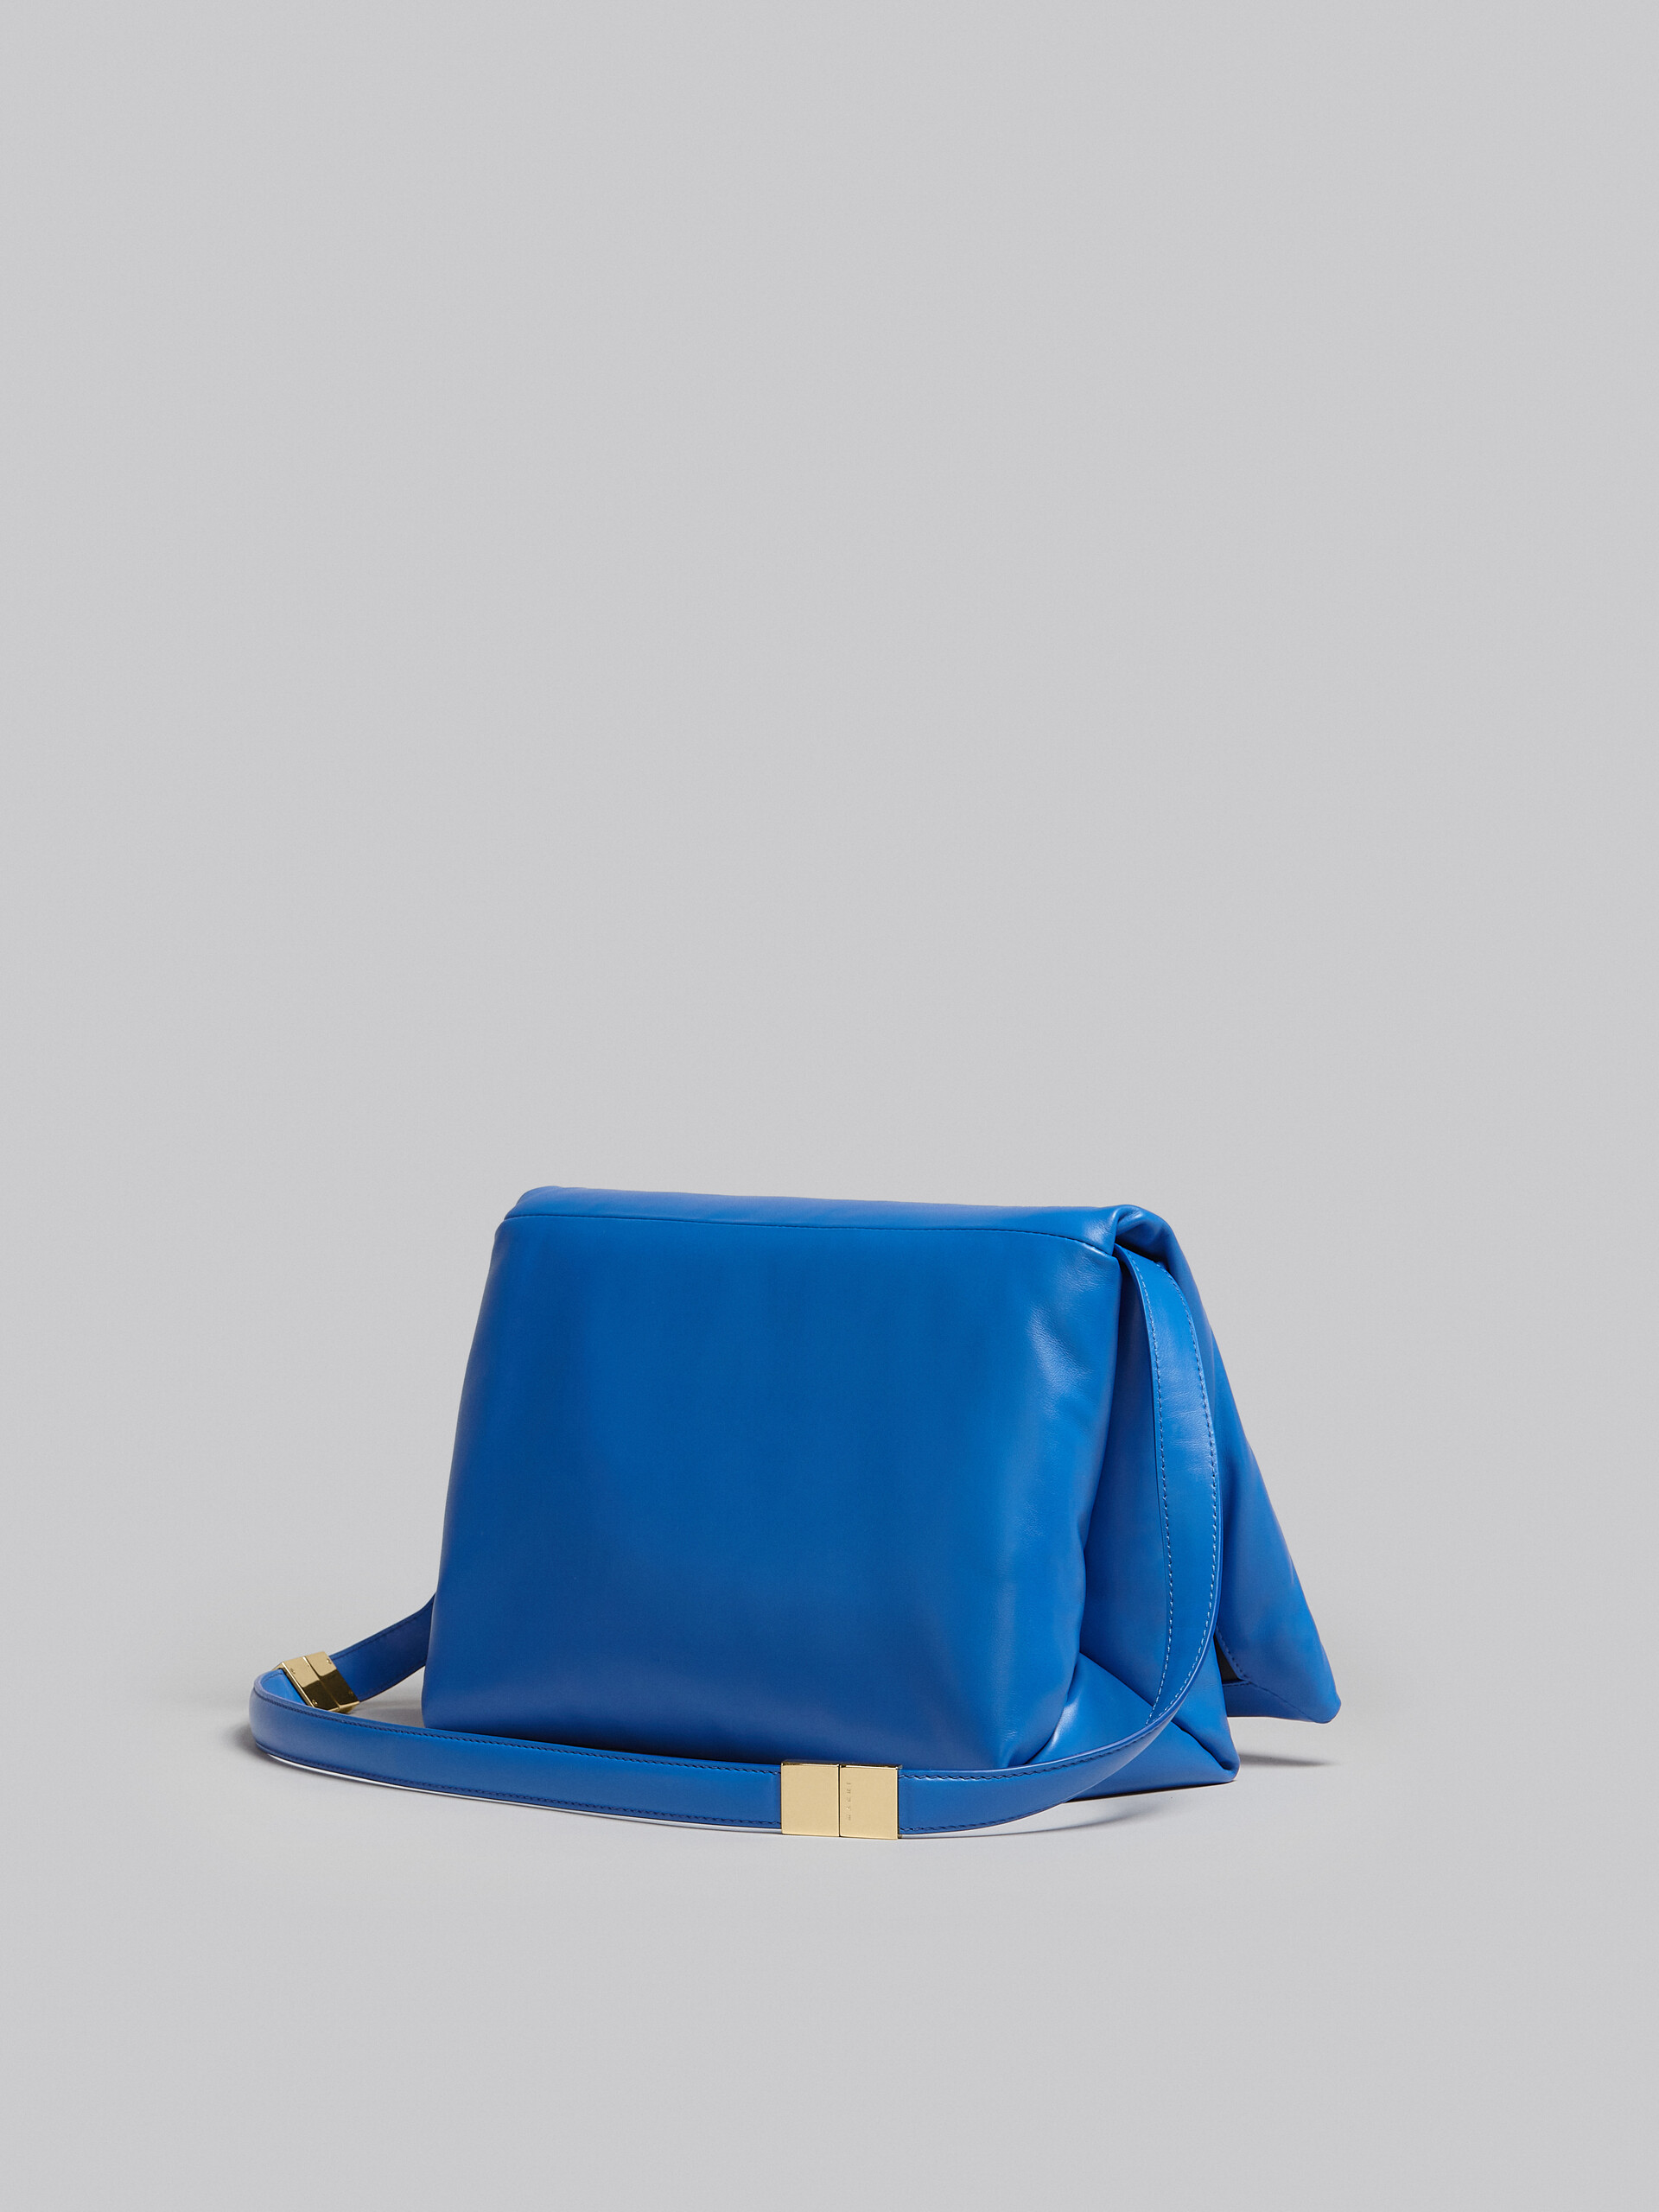 Large blue calsfkin Prisma bag - Shoulder Bag - Image 3